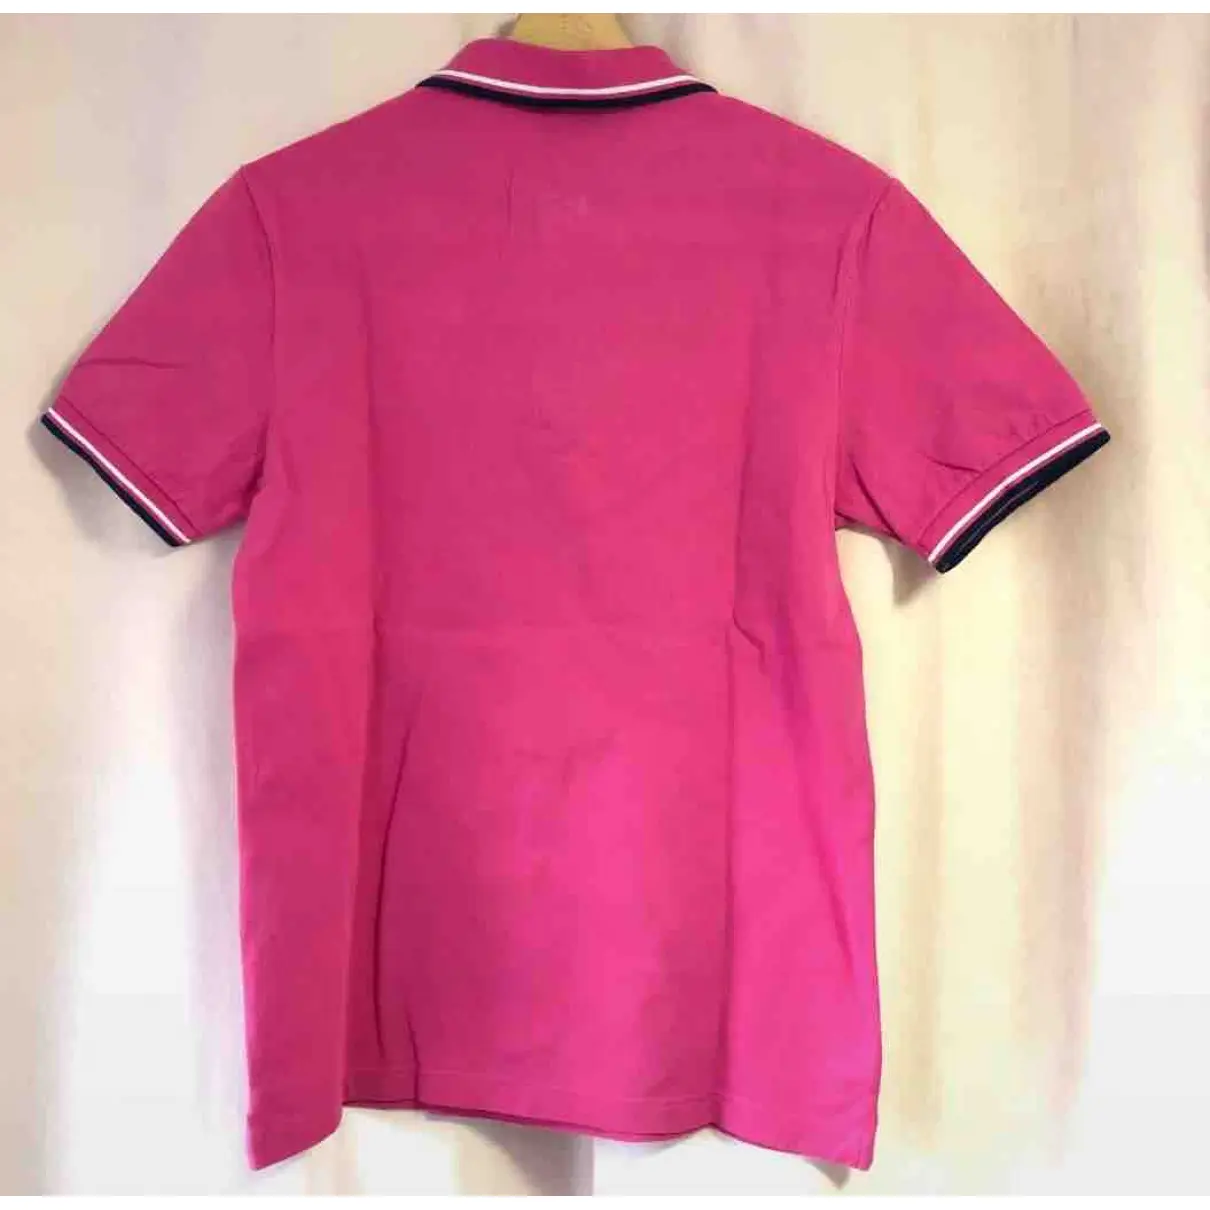 Buy Prada Pink Cotton Top online